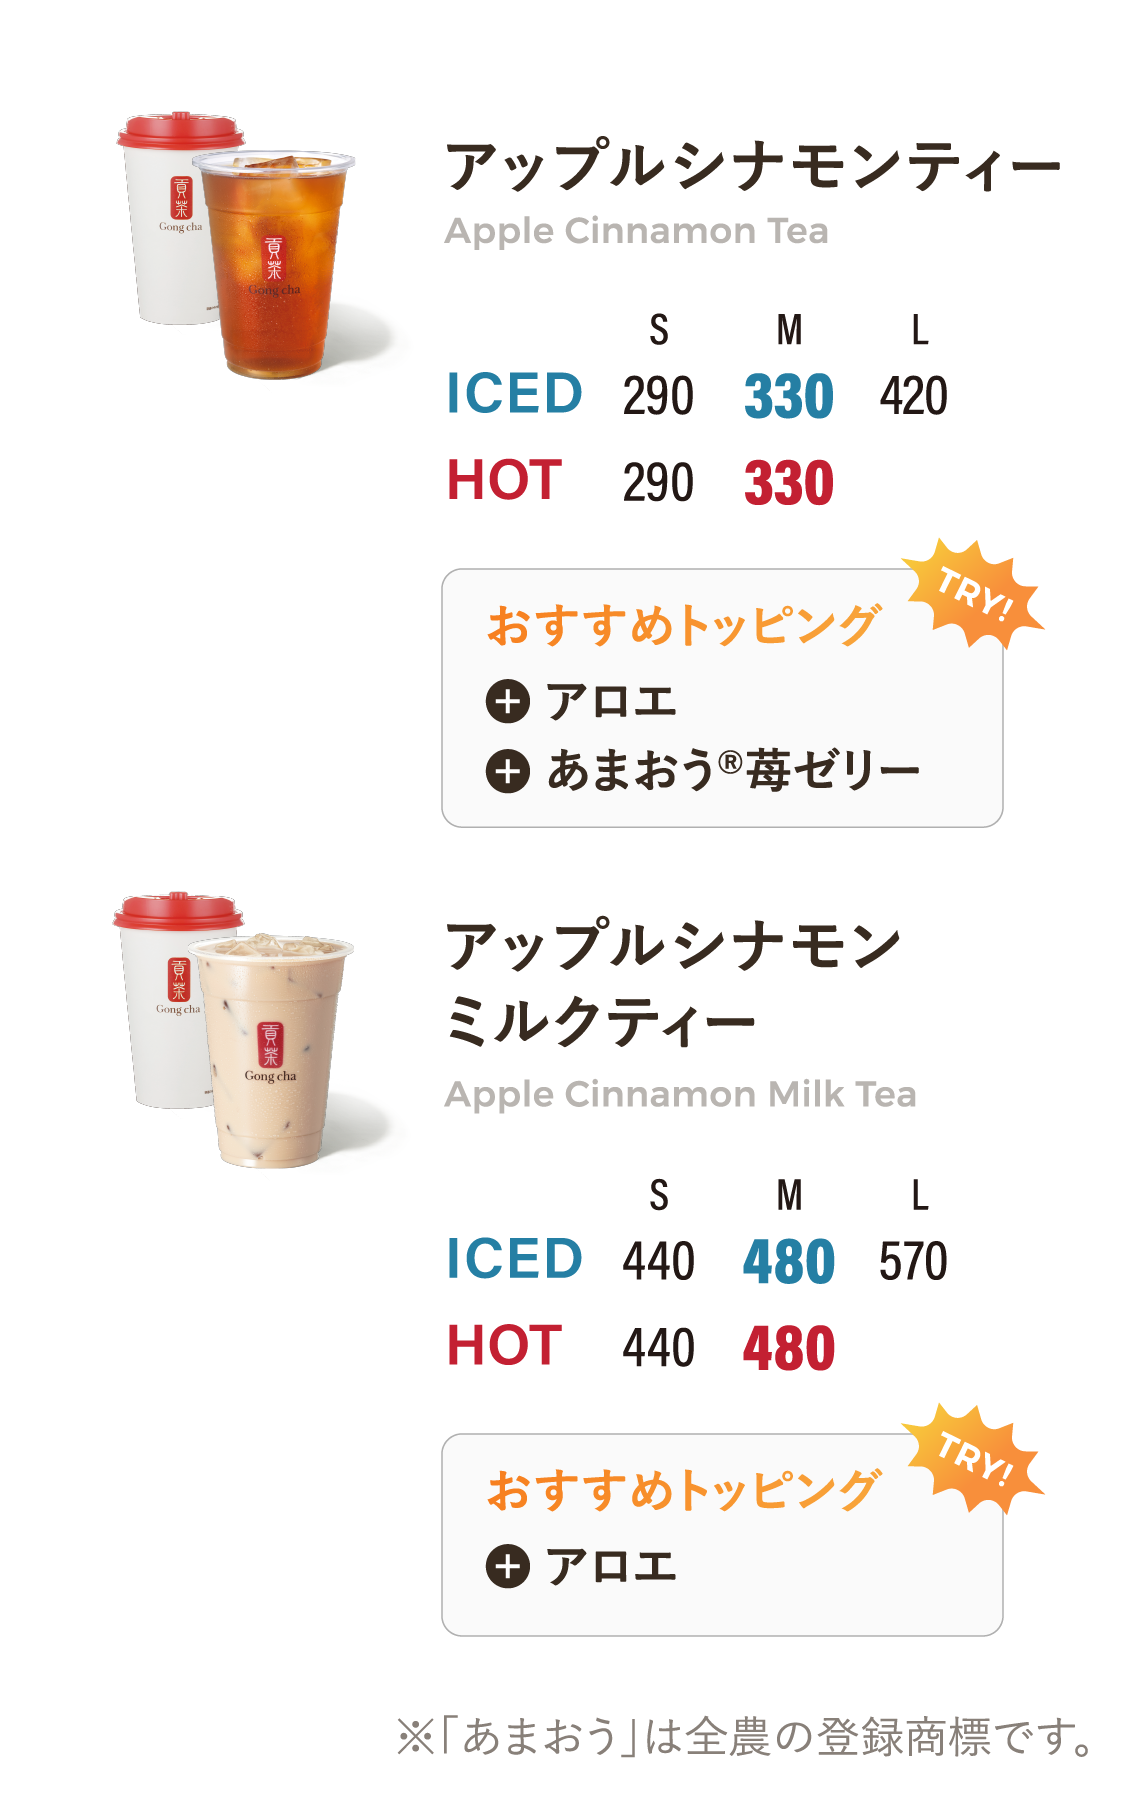 Monthly Tea 価格表